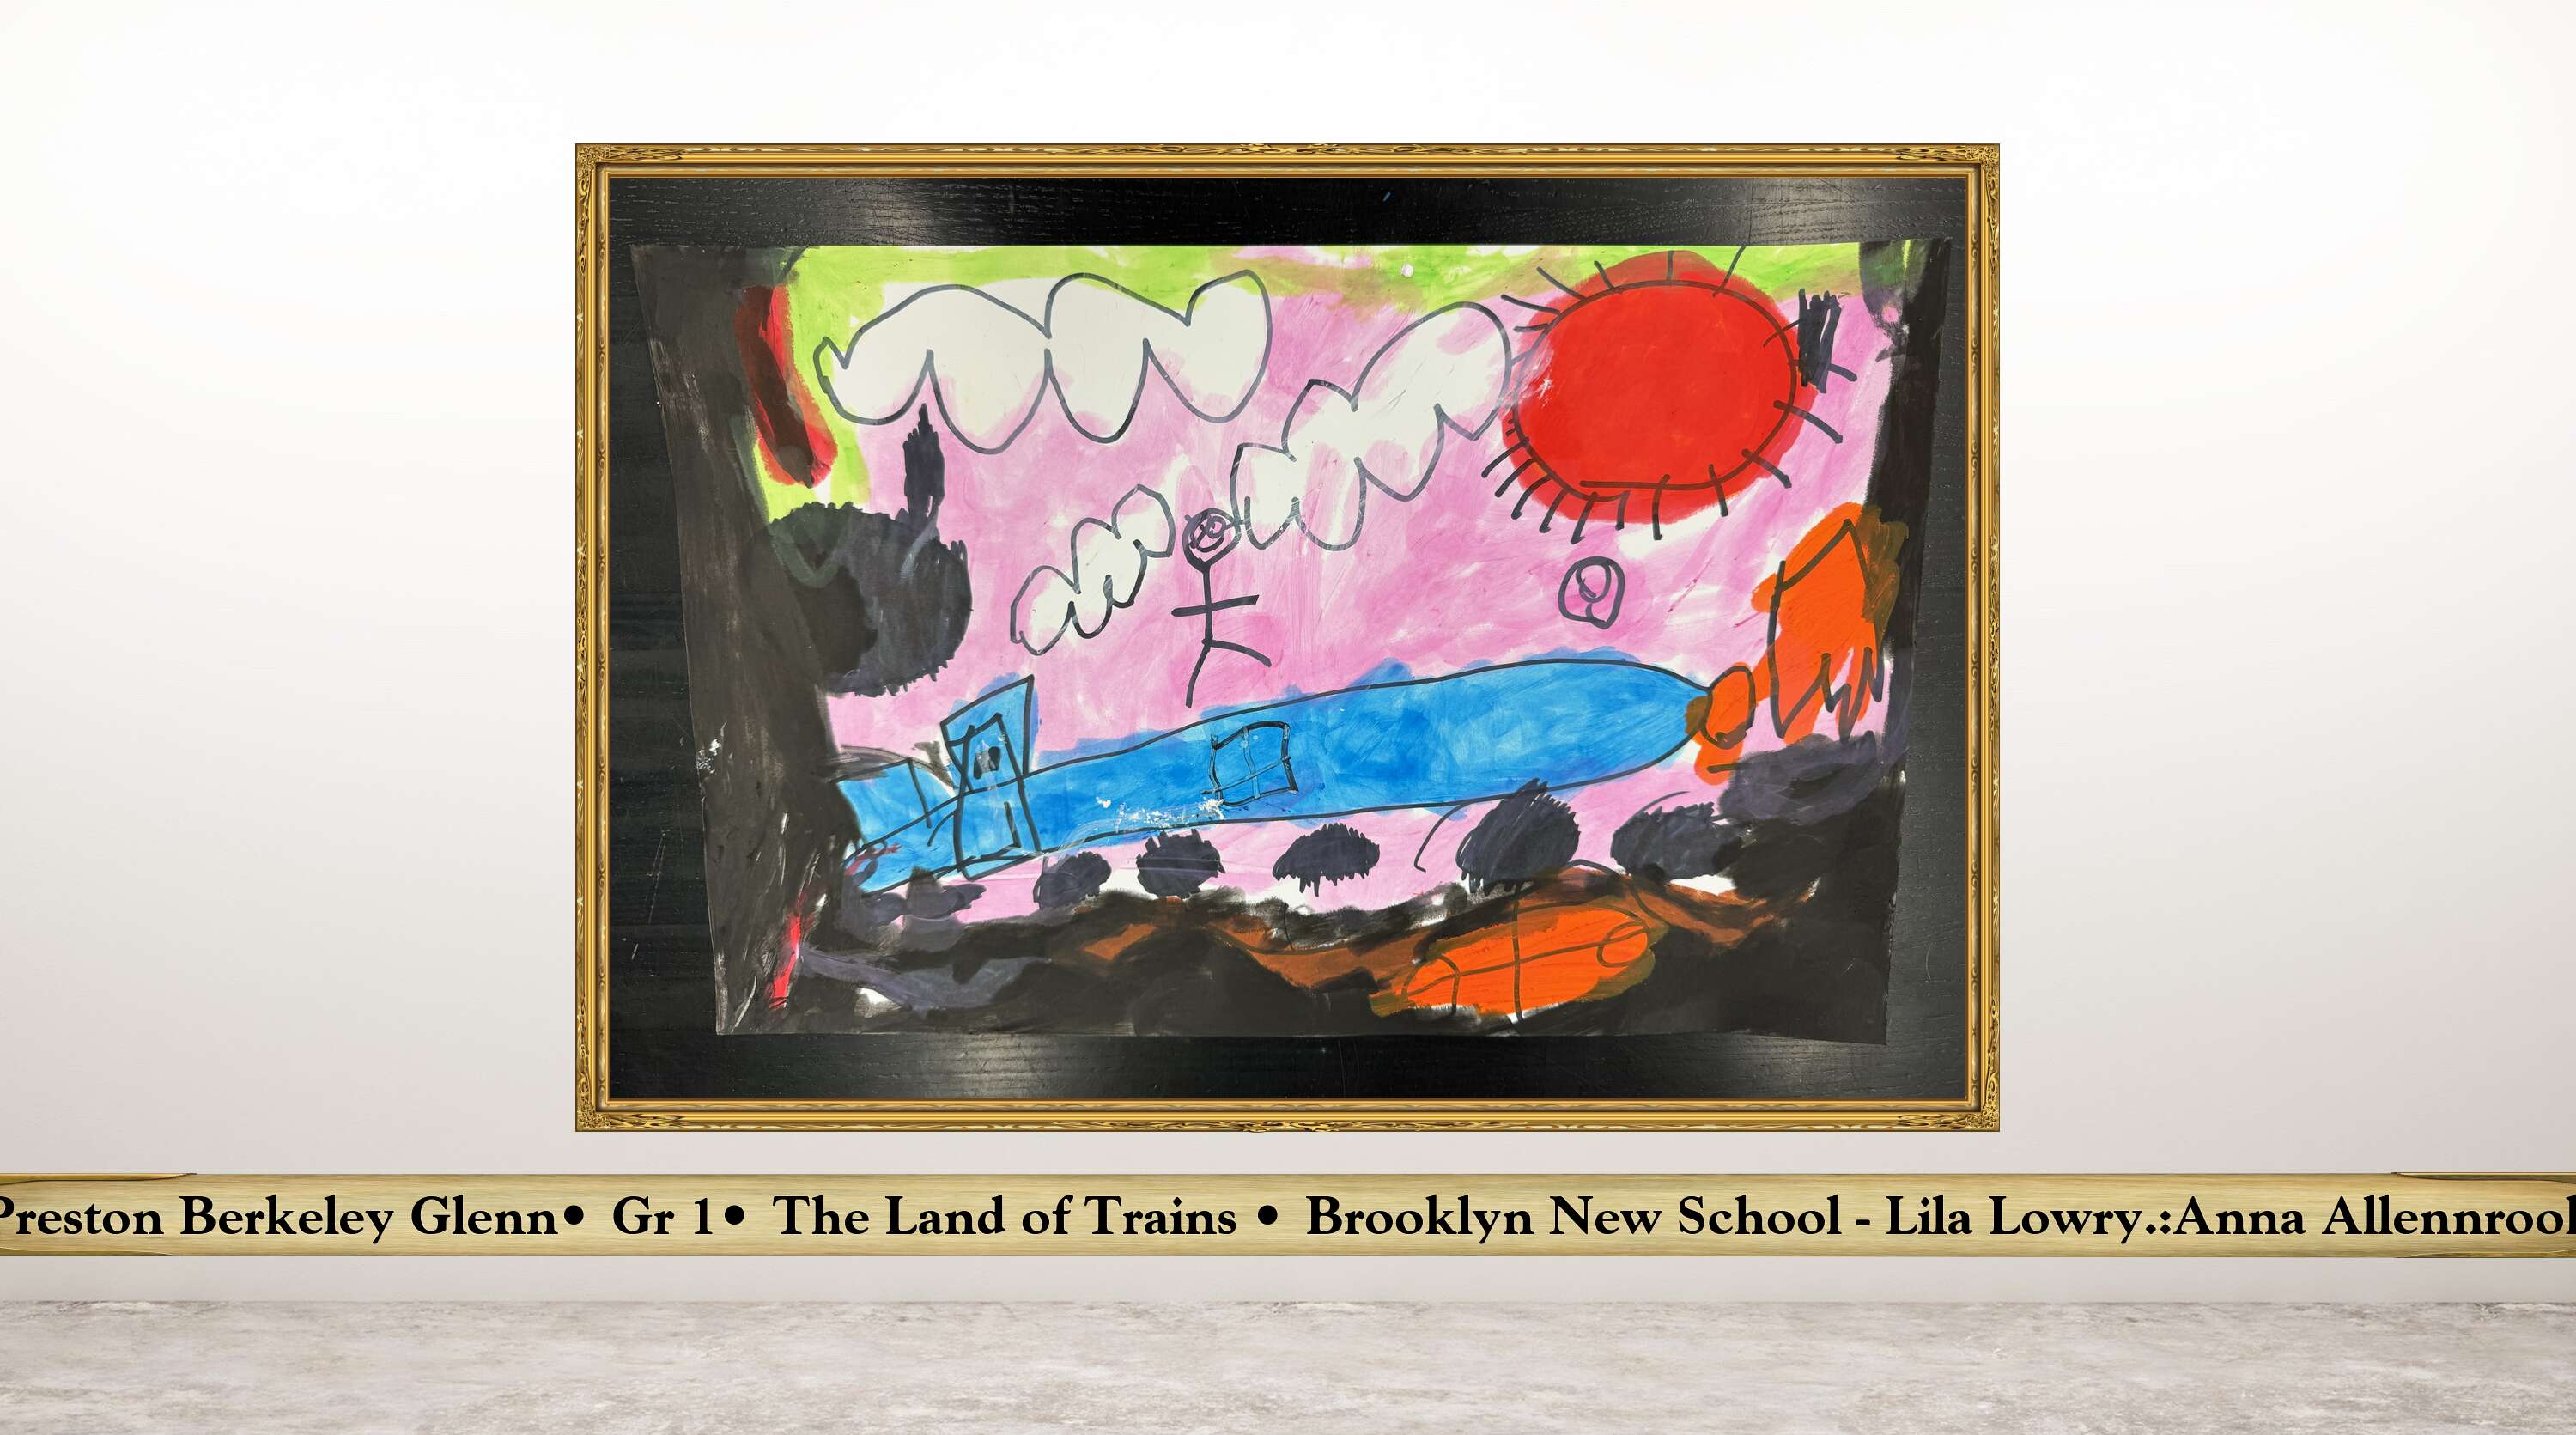 Preston Berkeley Glenn• Gr 1• The Land of Trains • Brooklyn New School - Lila Lowry.:Anna Allennrook